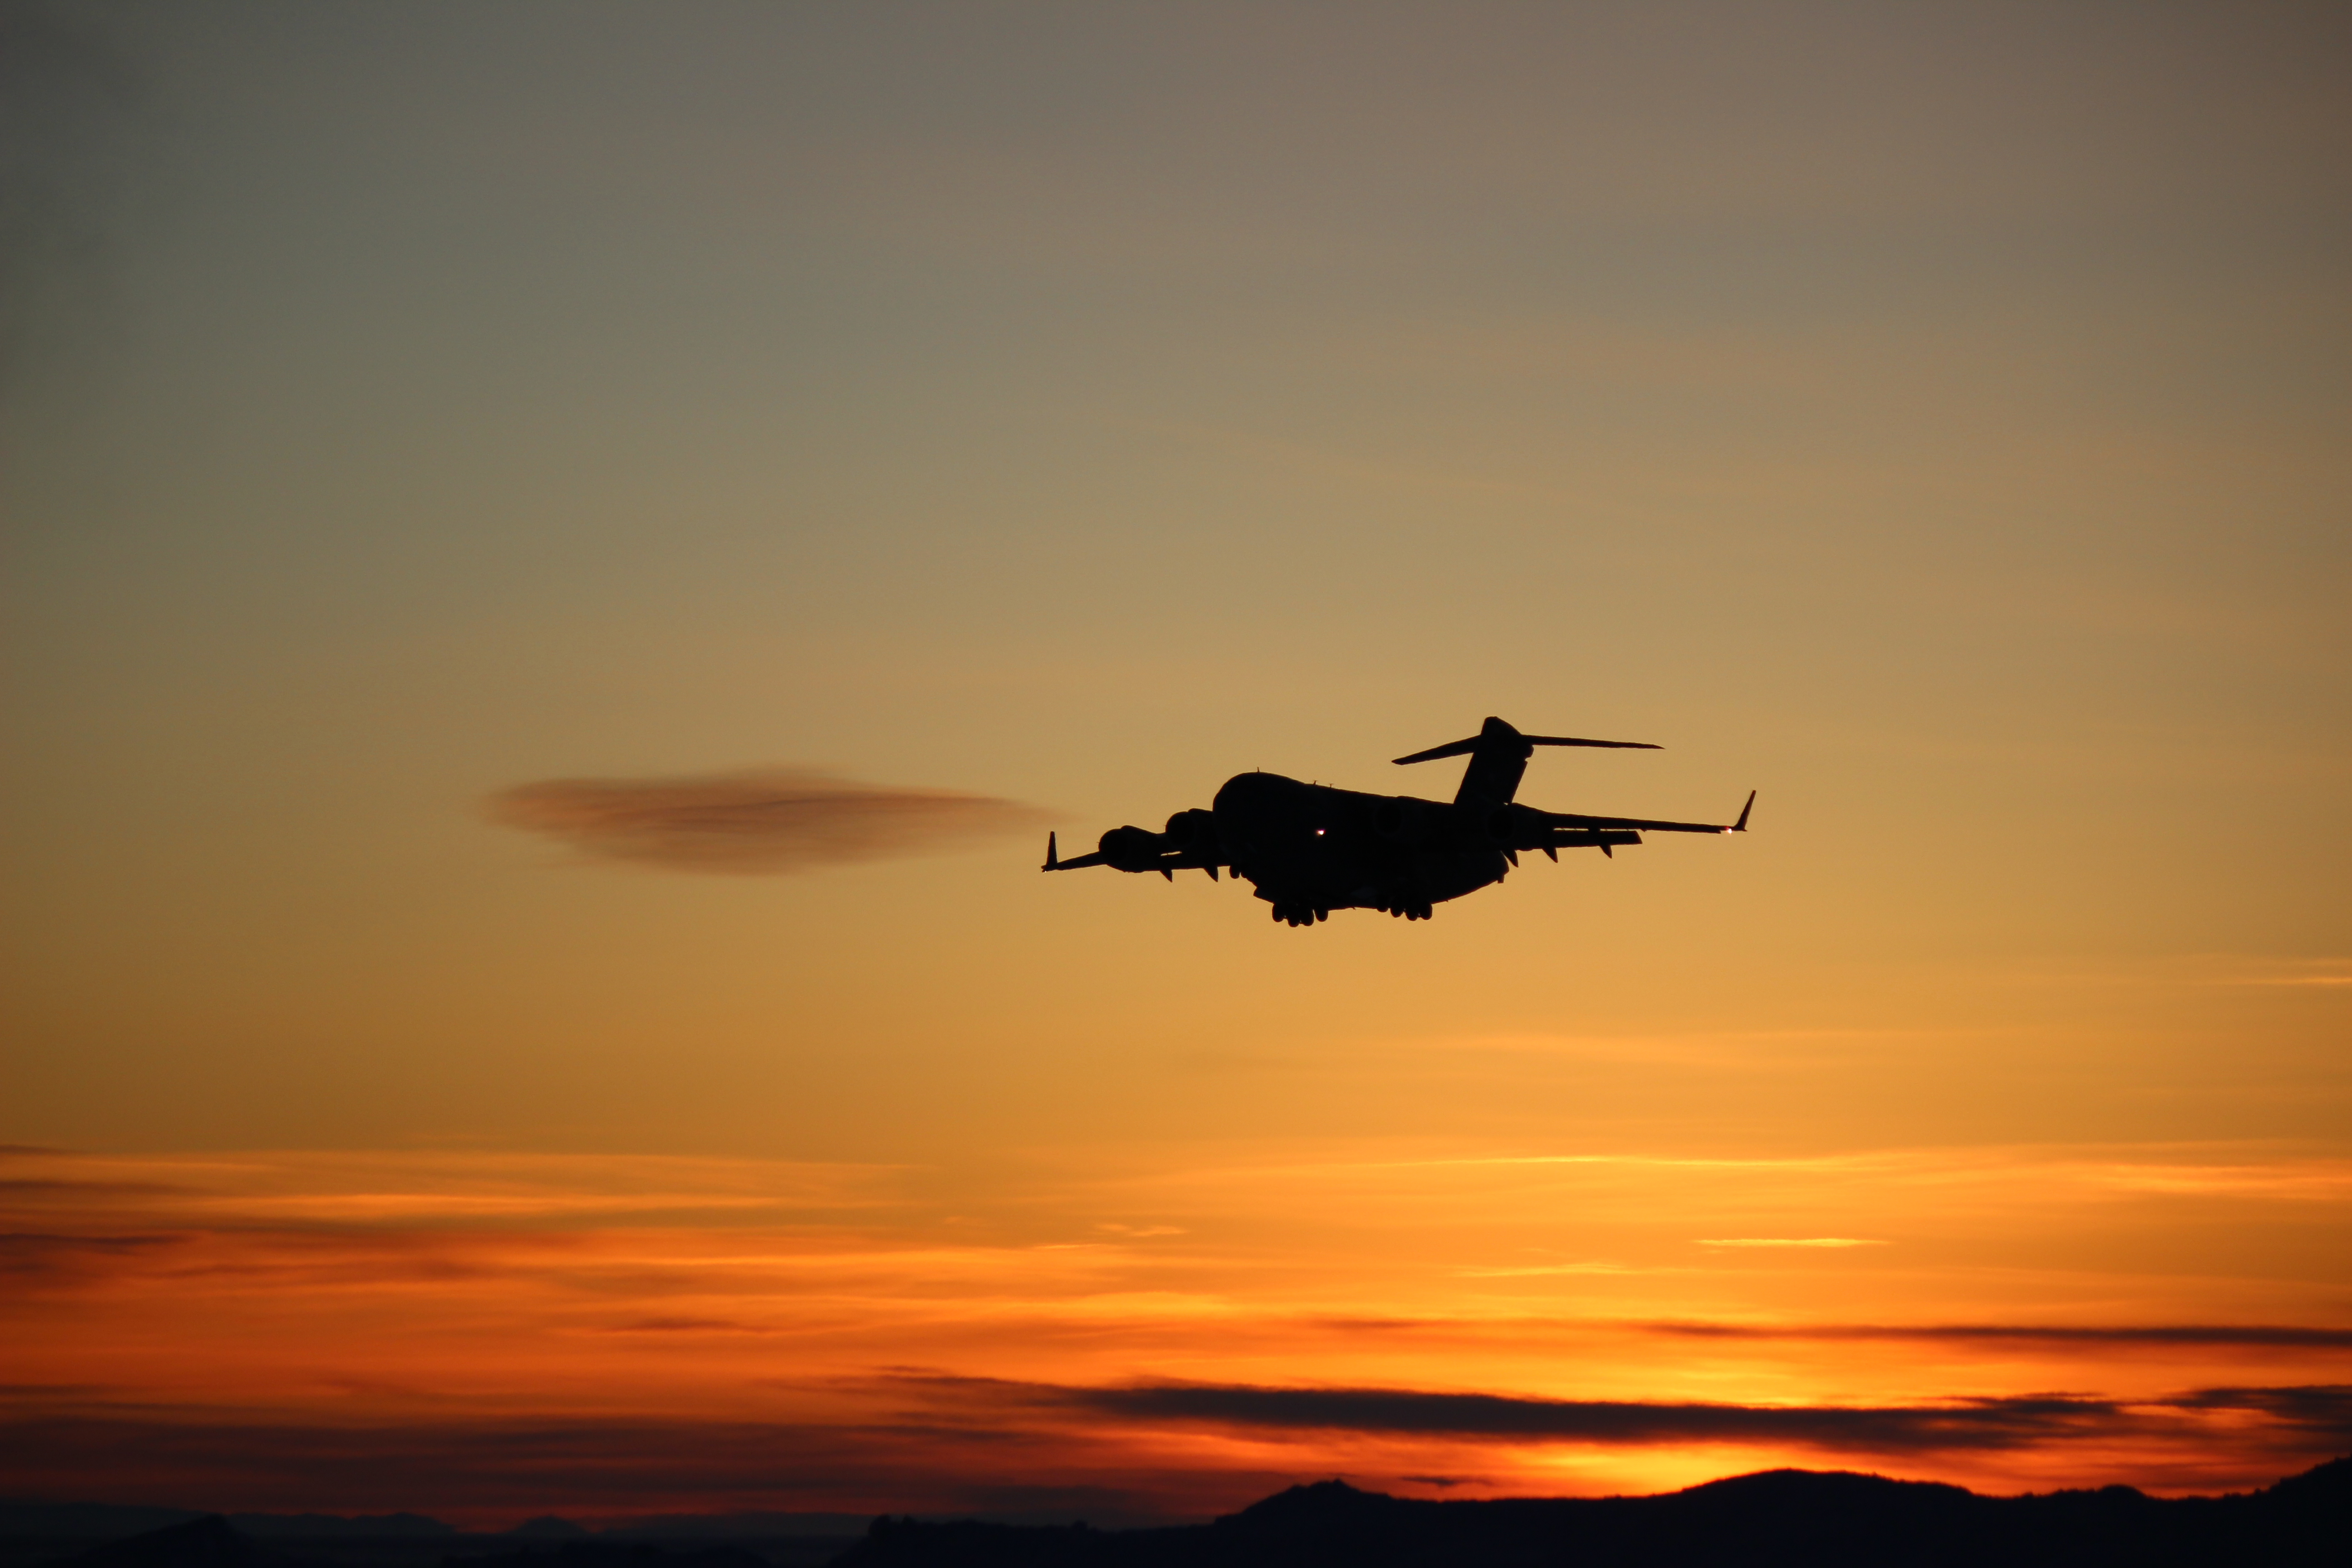 A plane flies across a colorful sunrise.